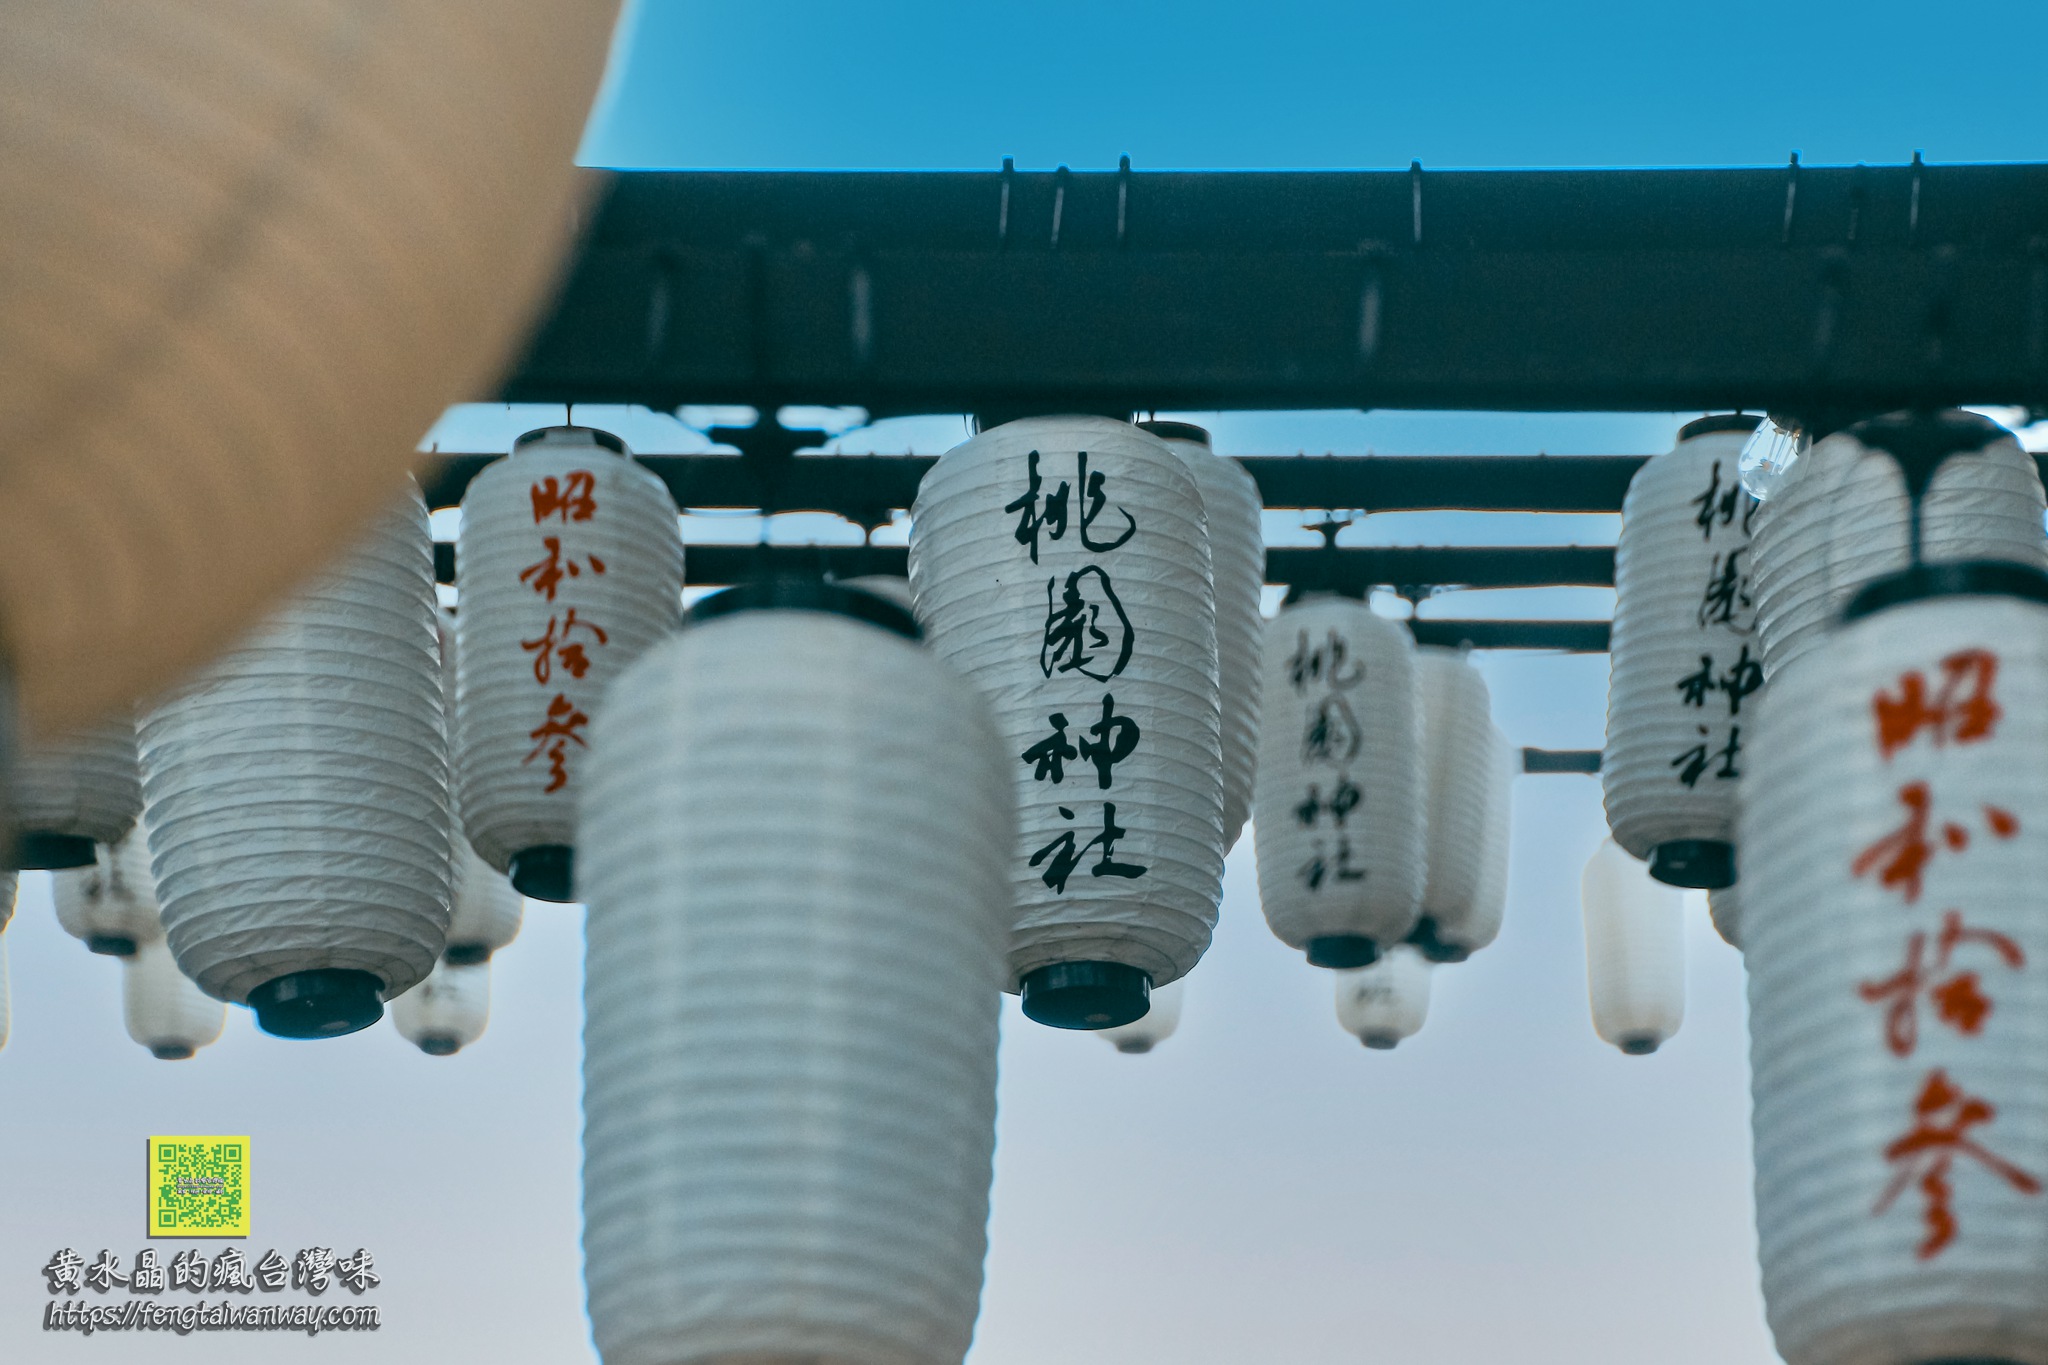 桃園神社【桃園景點】｜在台灣保存最完整的日本神社感受日本風情遊程